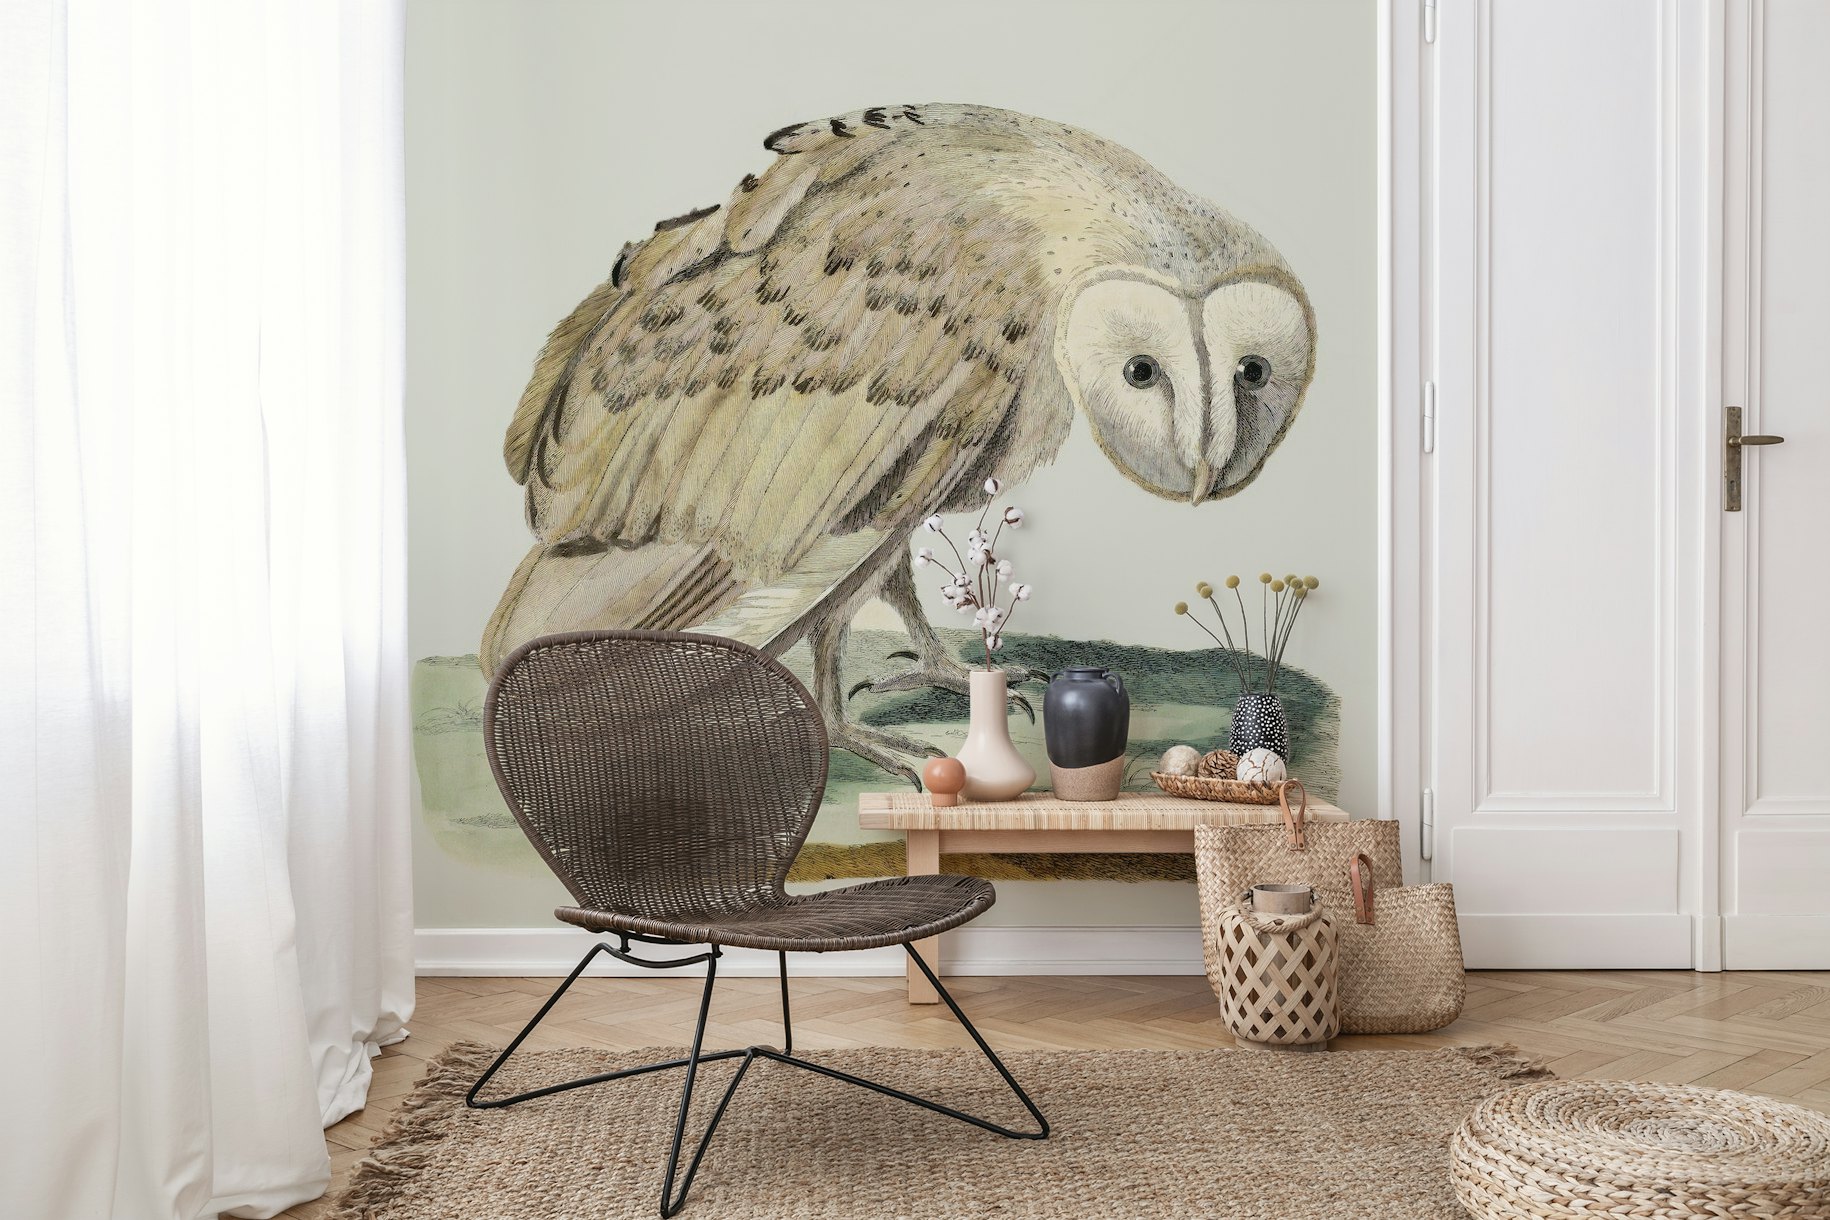 The white owl wallpaper